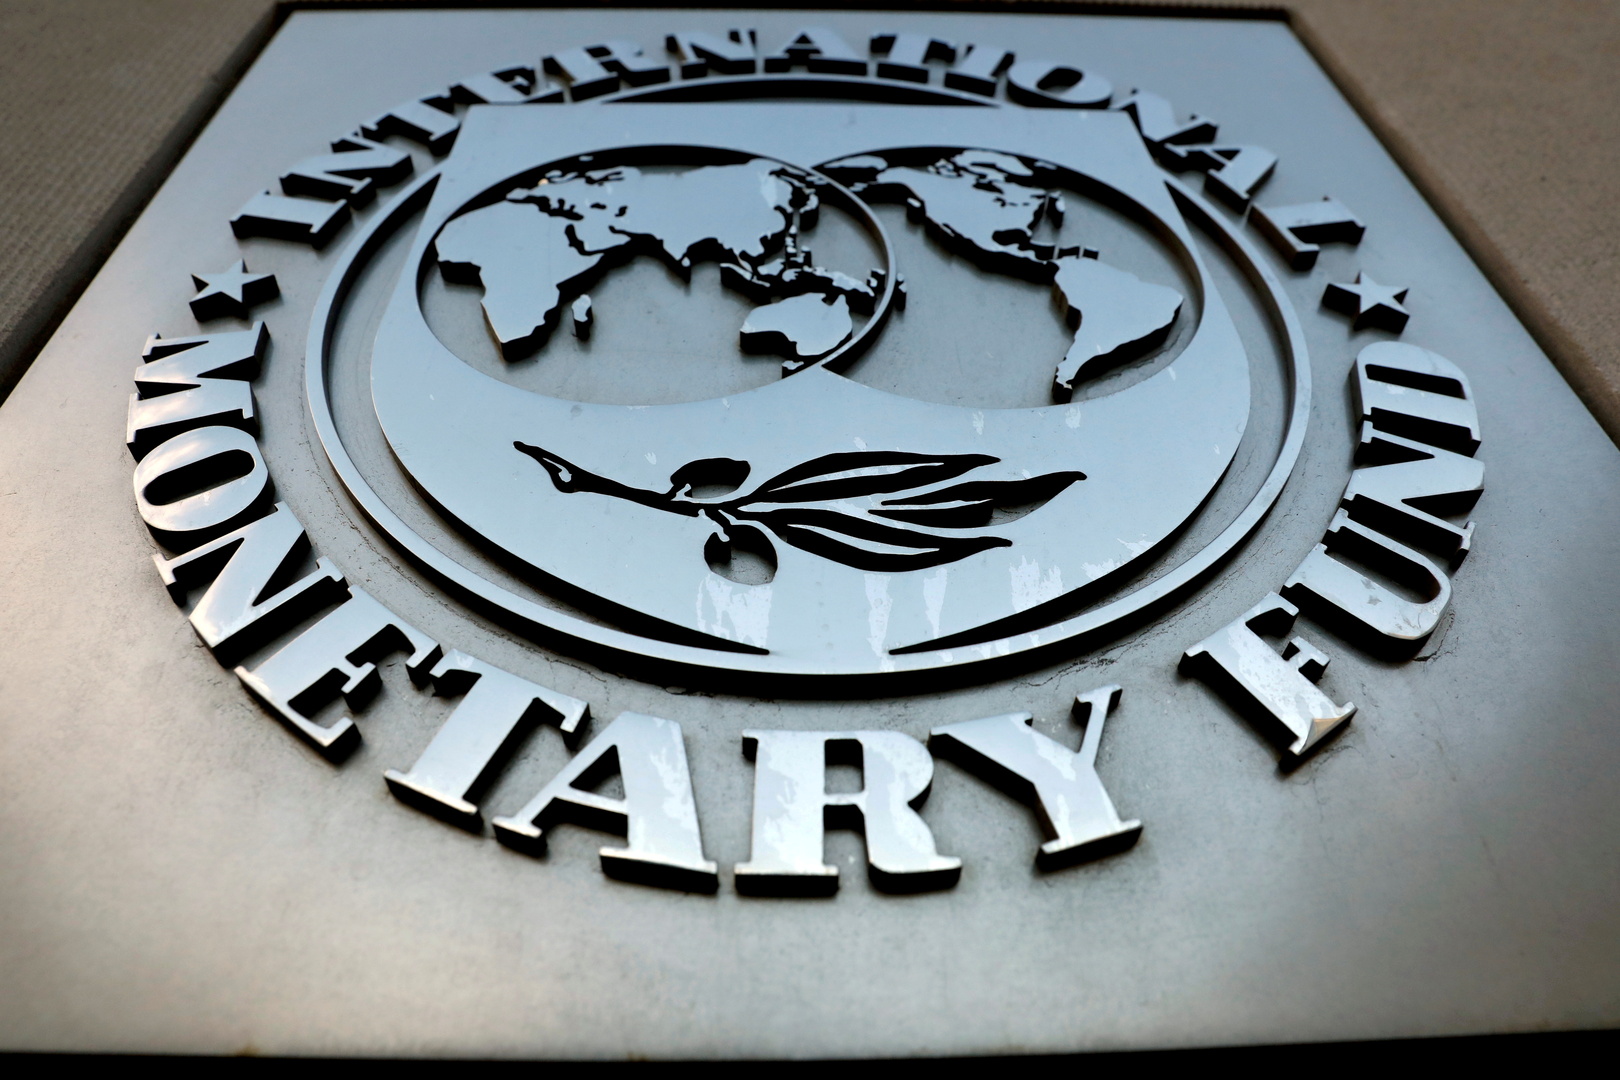 صندوق النقد الدولي يحذر من مخاطر مع ارتفاع الديون العالمية إلى 226 تريليون دولار